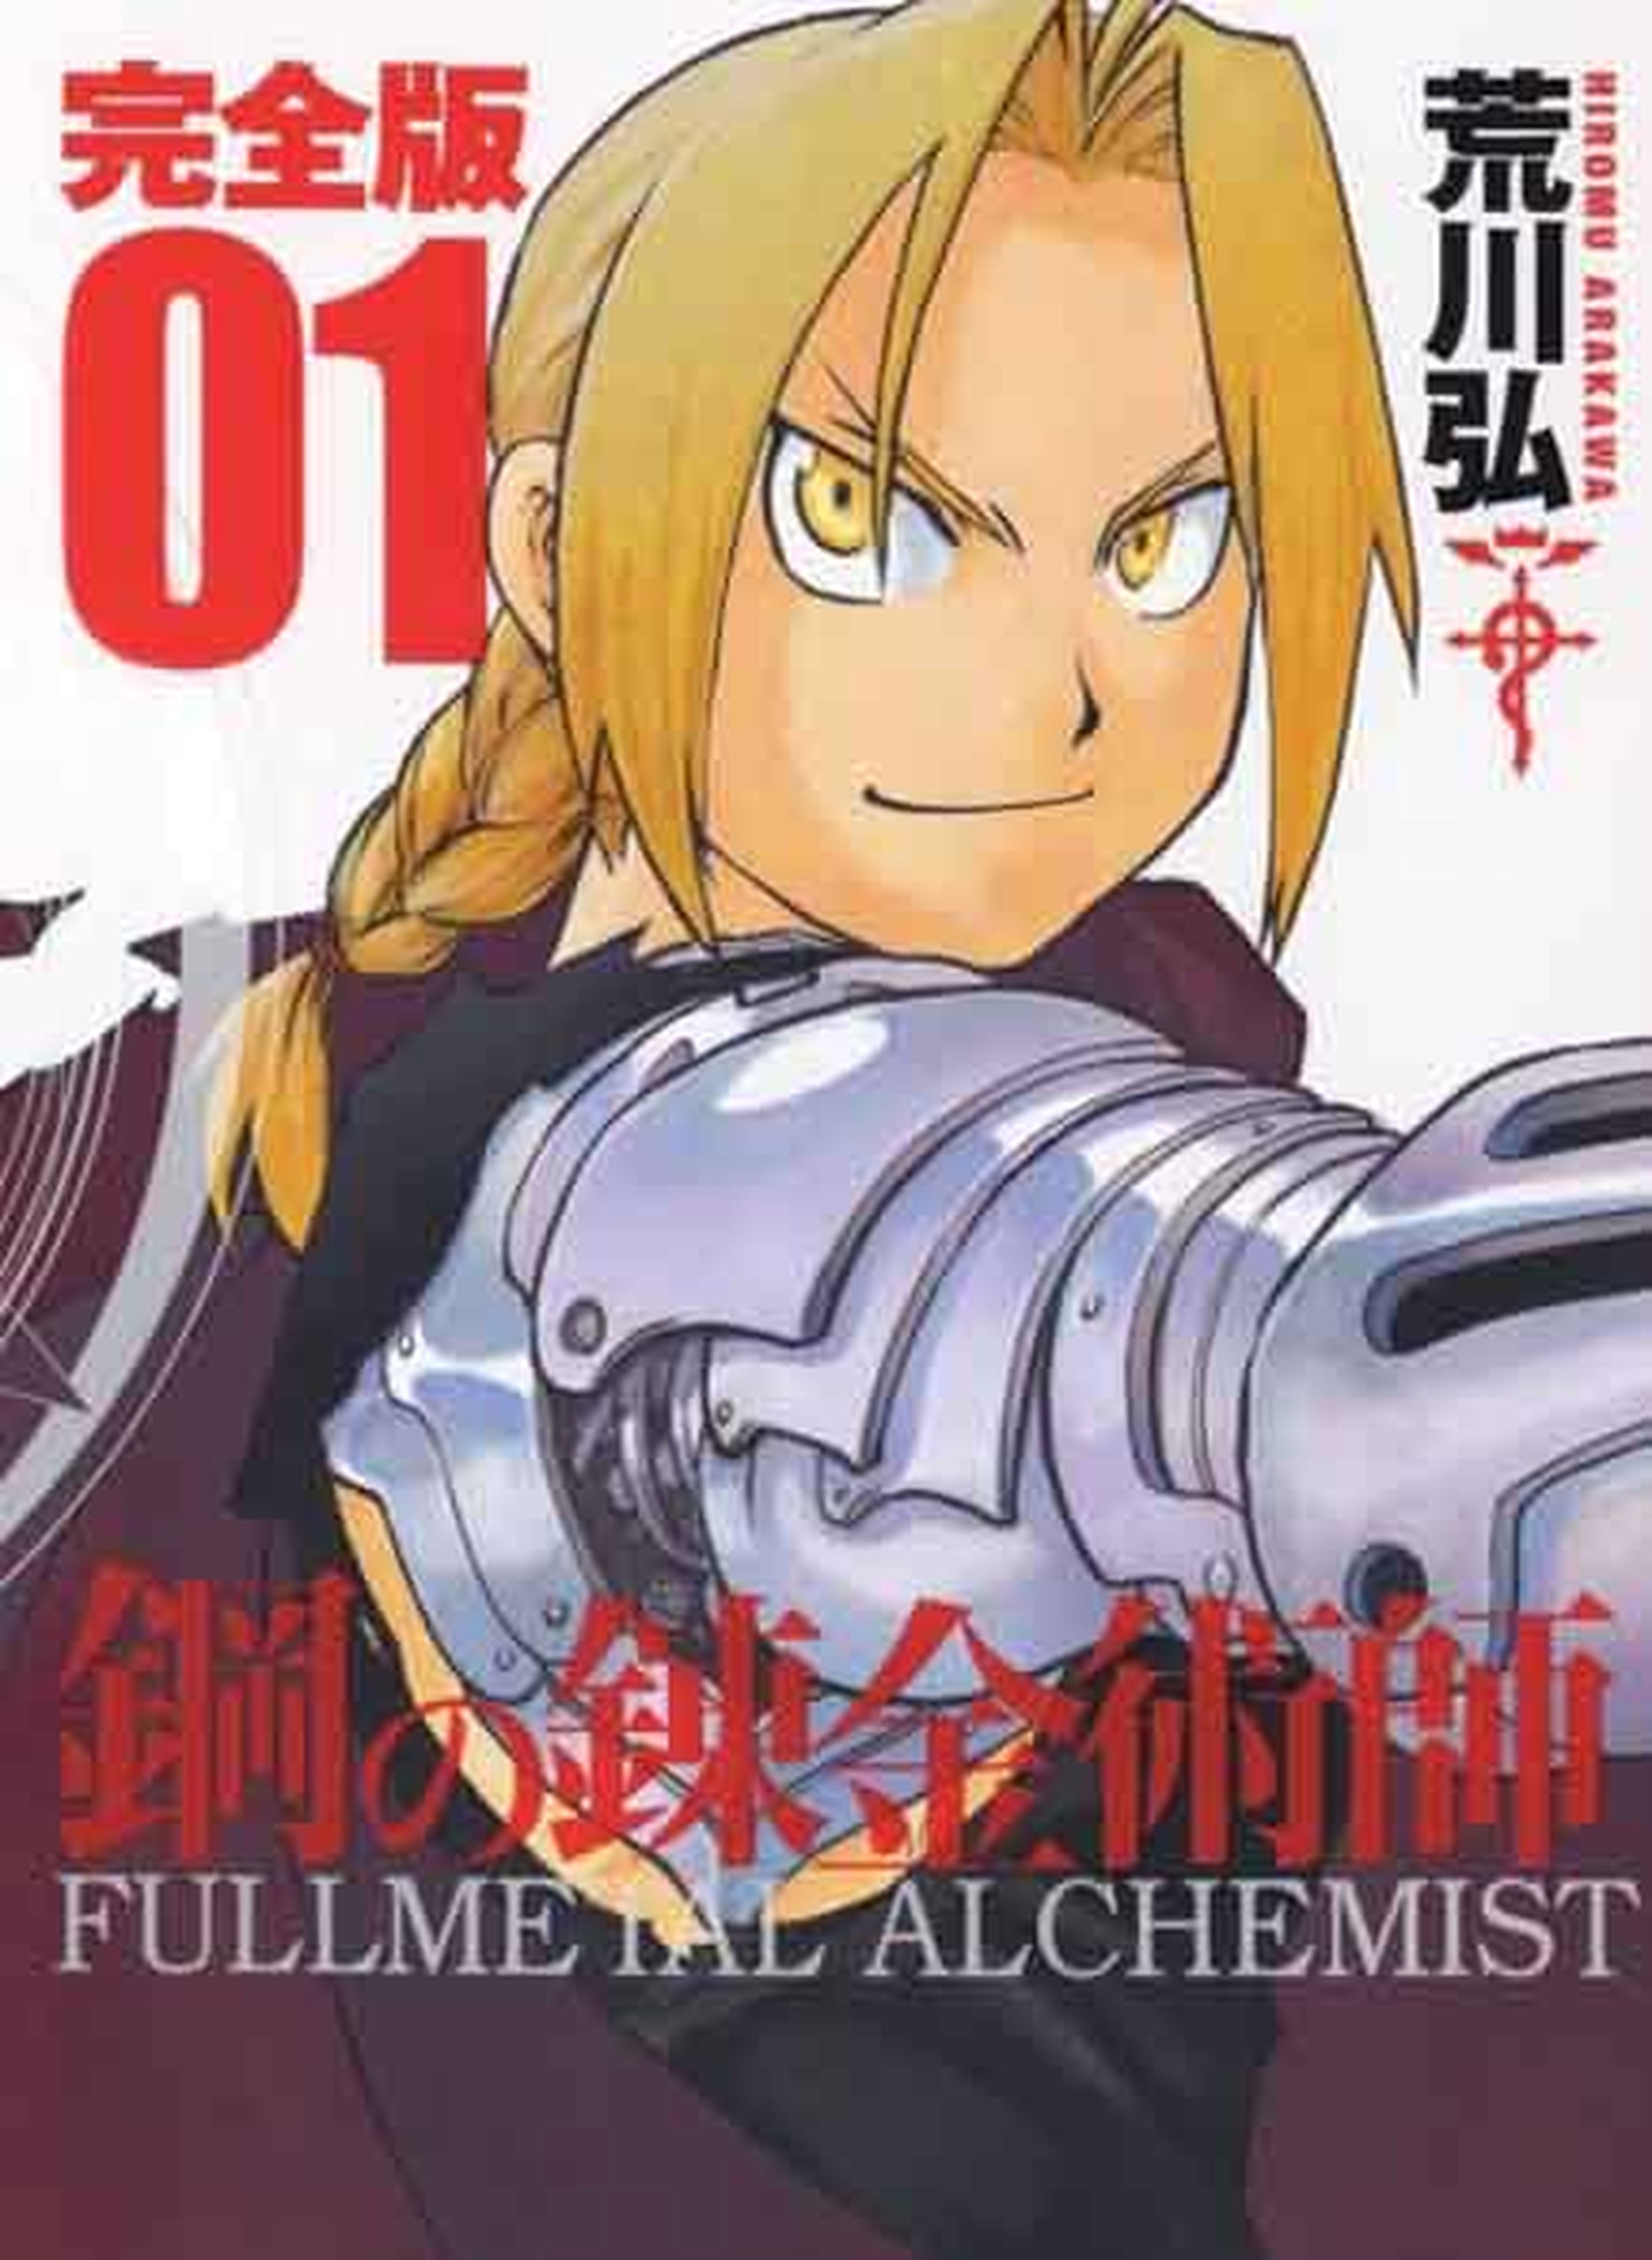 La edición kanzenban de Fullmetal Alchemist, en octubre